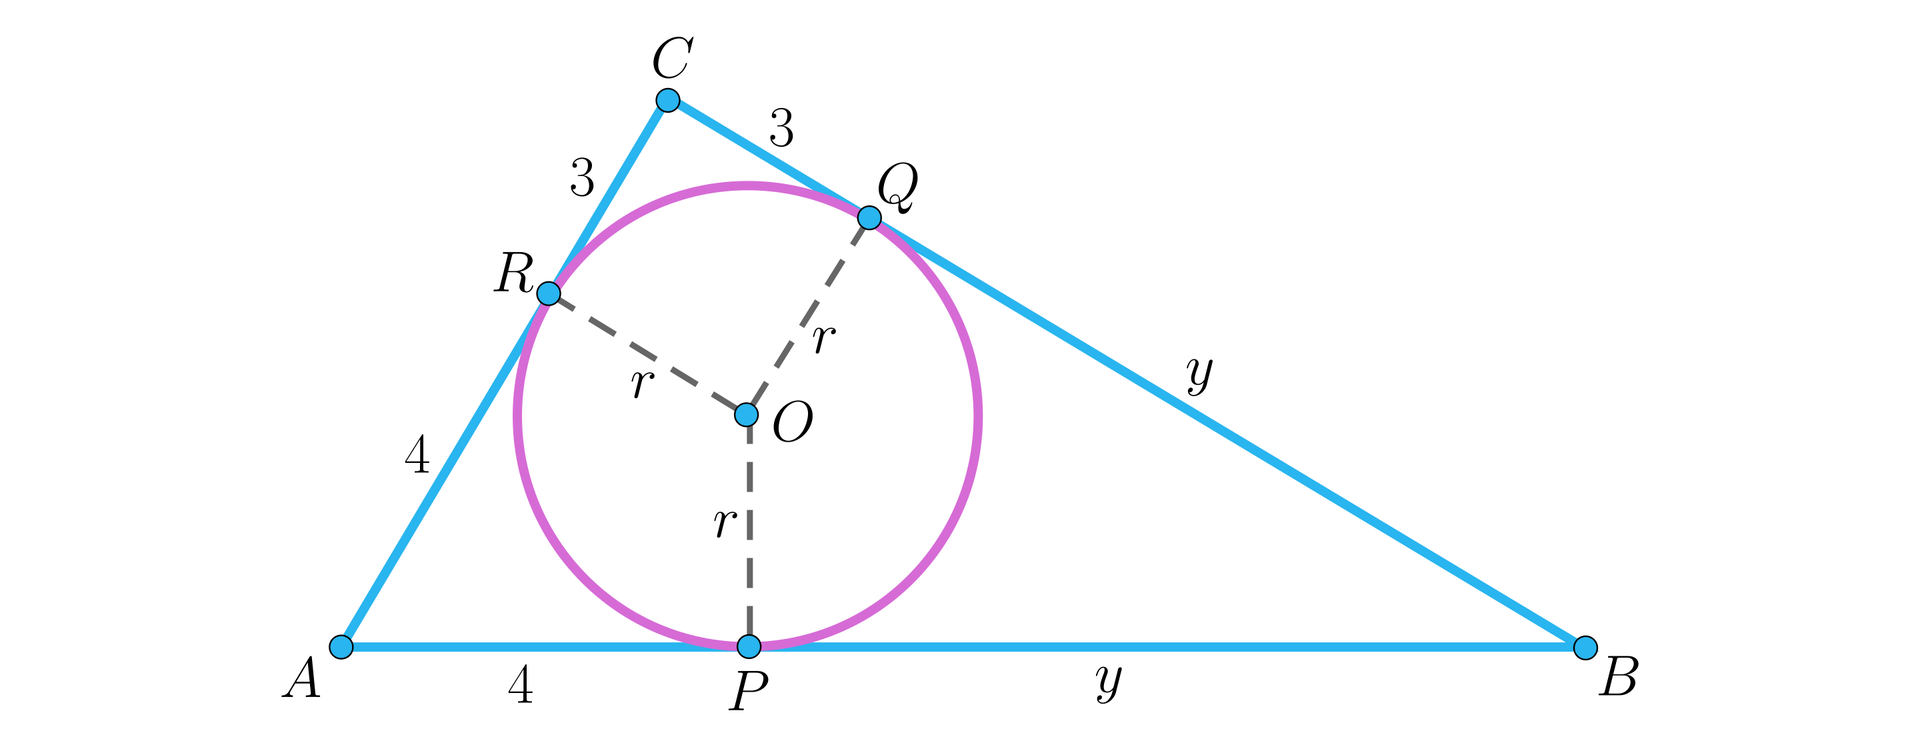 Ilustracja przedstawia trójkąt prostokątny o kącie prostym przy wierzchołku C, trójkąt jest opisany na okręgu. Okrąg jest styczny do ramion trójkąta w punktach. Do ramienia AC w punkcie R, do ramienia BC w punkcie Q oraz do podstawy AB w punkcie P. Odcinki RC oraz RQ mają miarę trzy, odcinki AR i AP mają długość cztery, a odcinki BQ oraz BP mają długość y. 